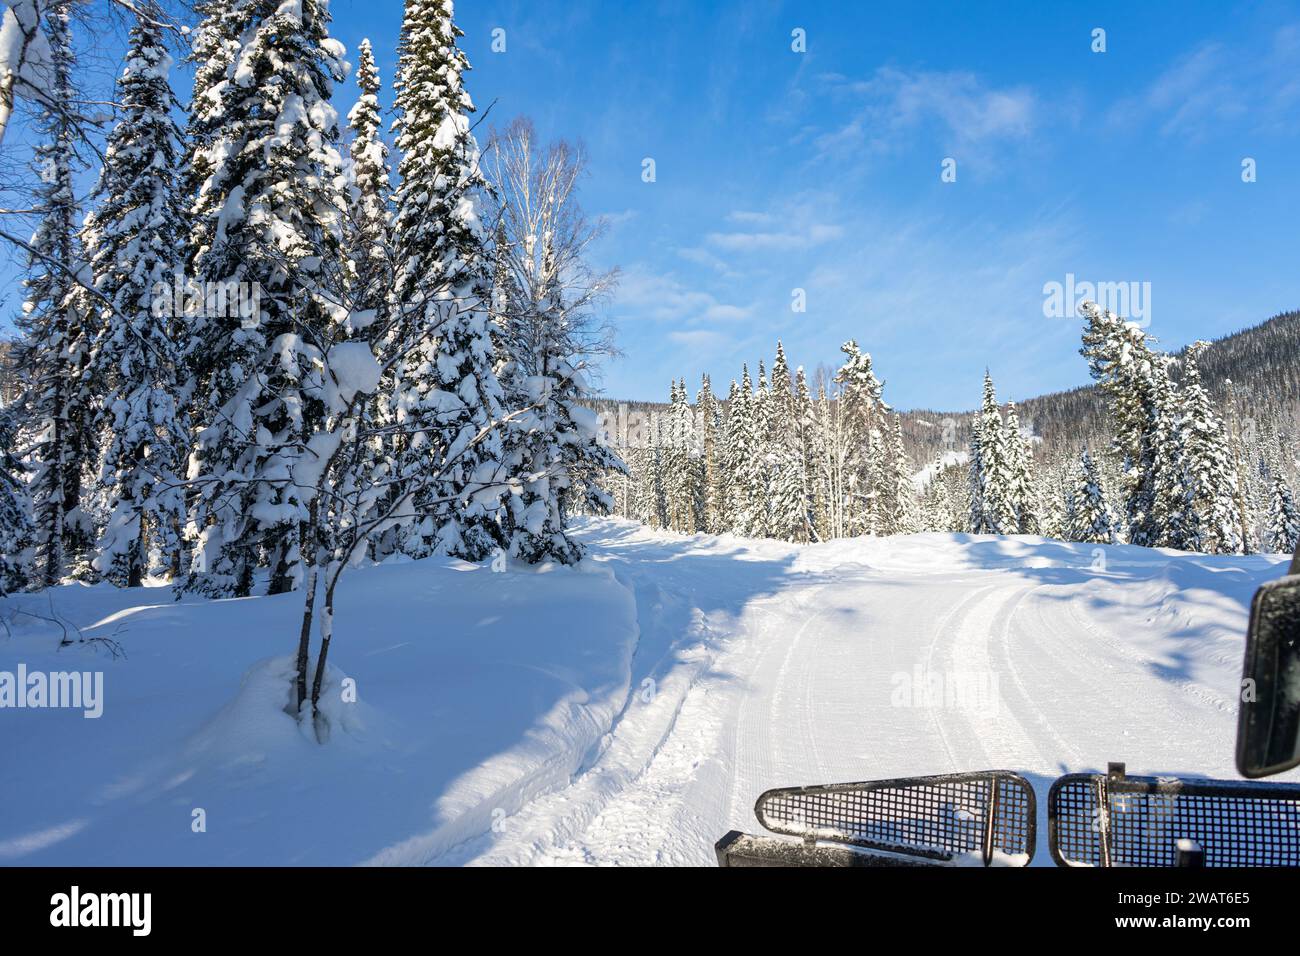 Strada invernale. Escursioni in gatto delle nevi rosse in una foresta di abeti rossi innevati, vista dalla cabina. Gita in Freeride per sciatori e snowboarder. Foto Stock